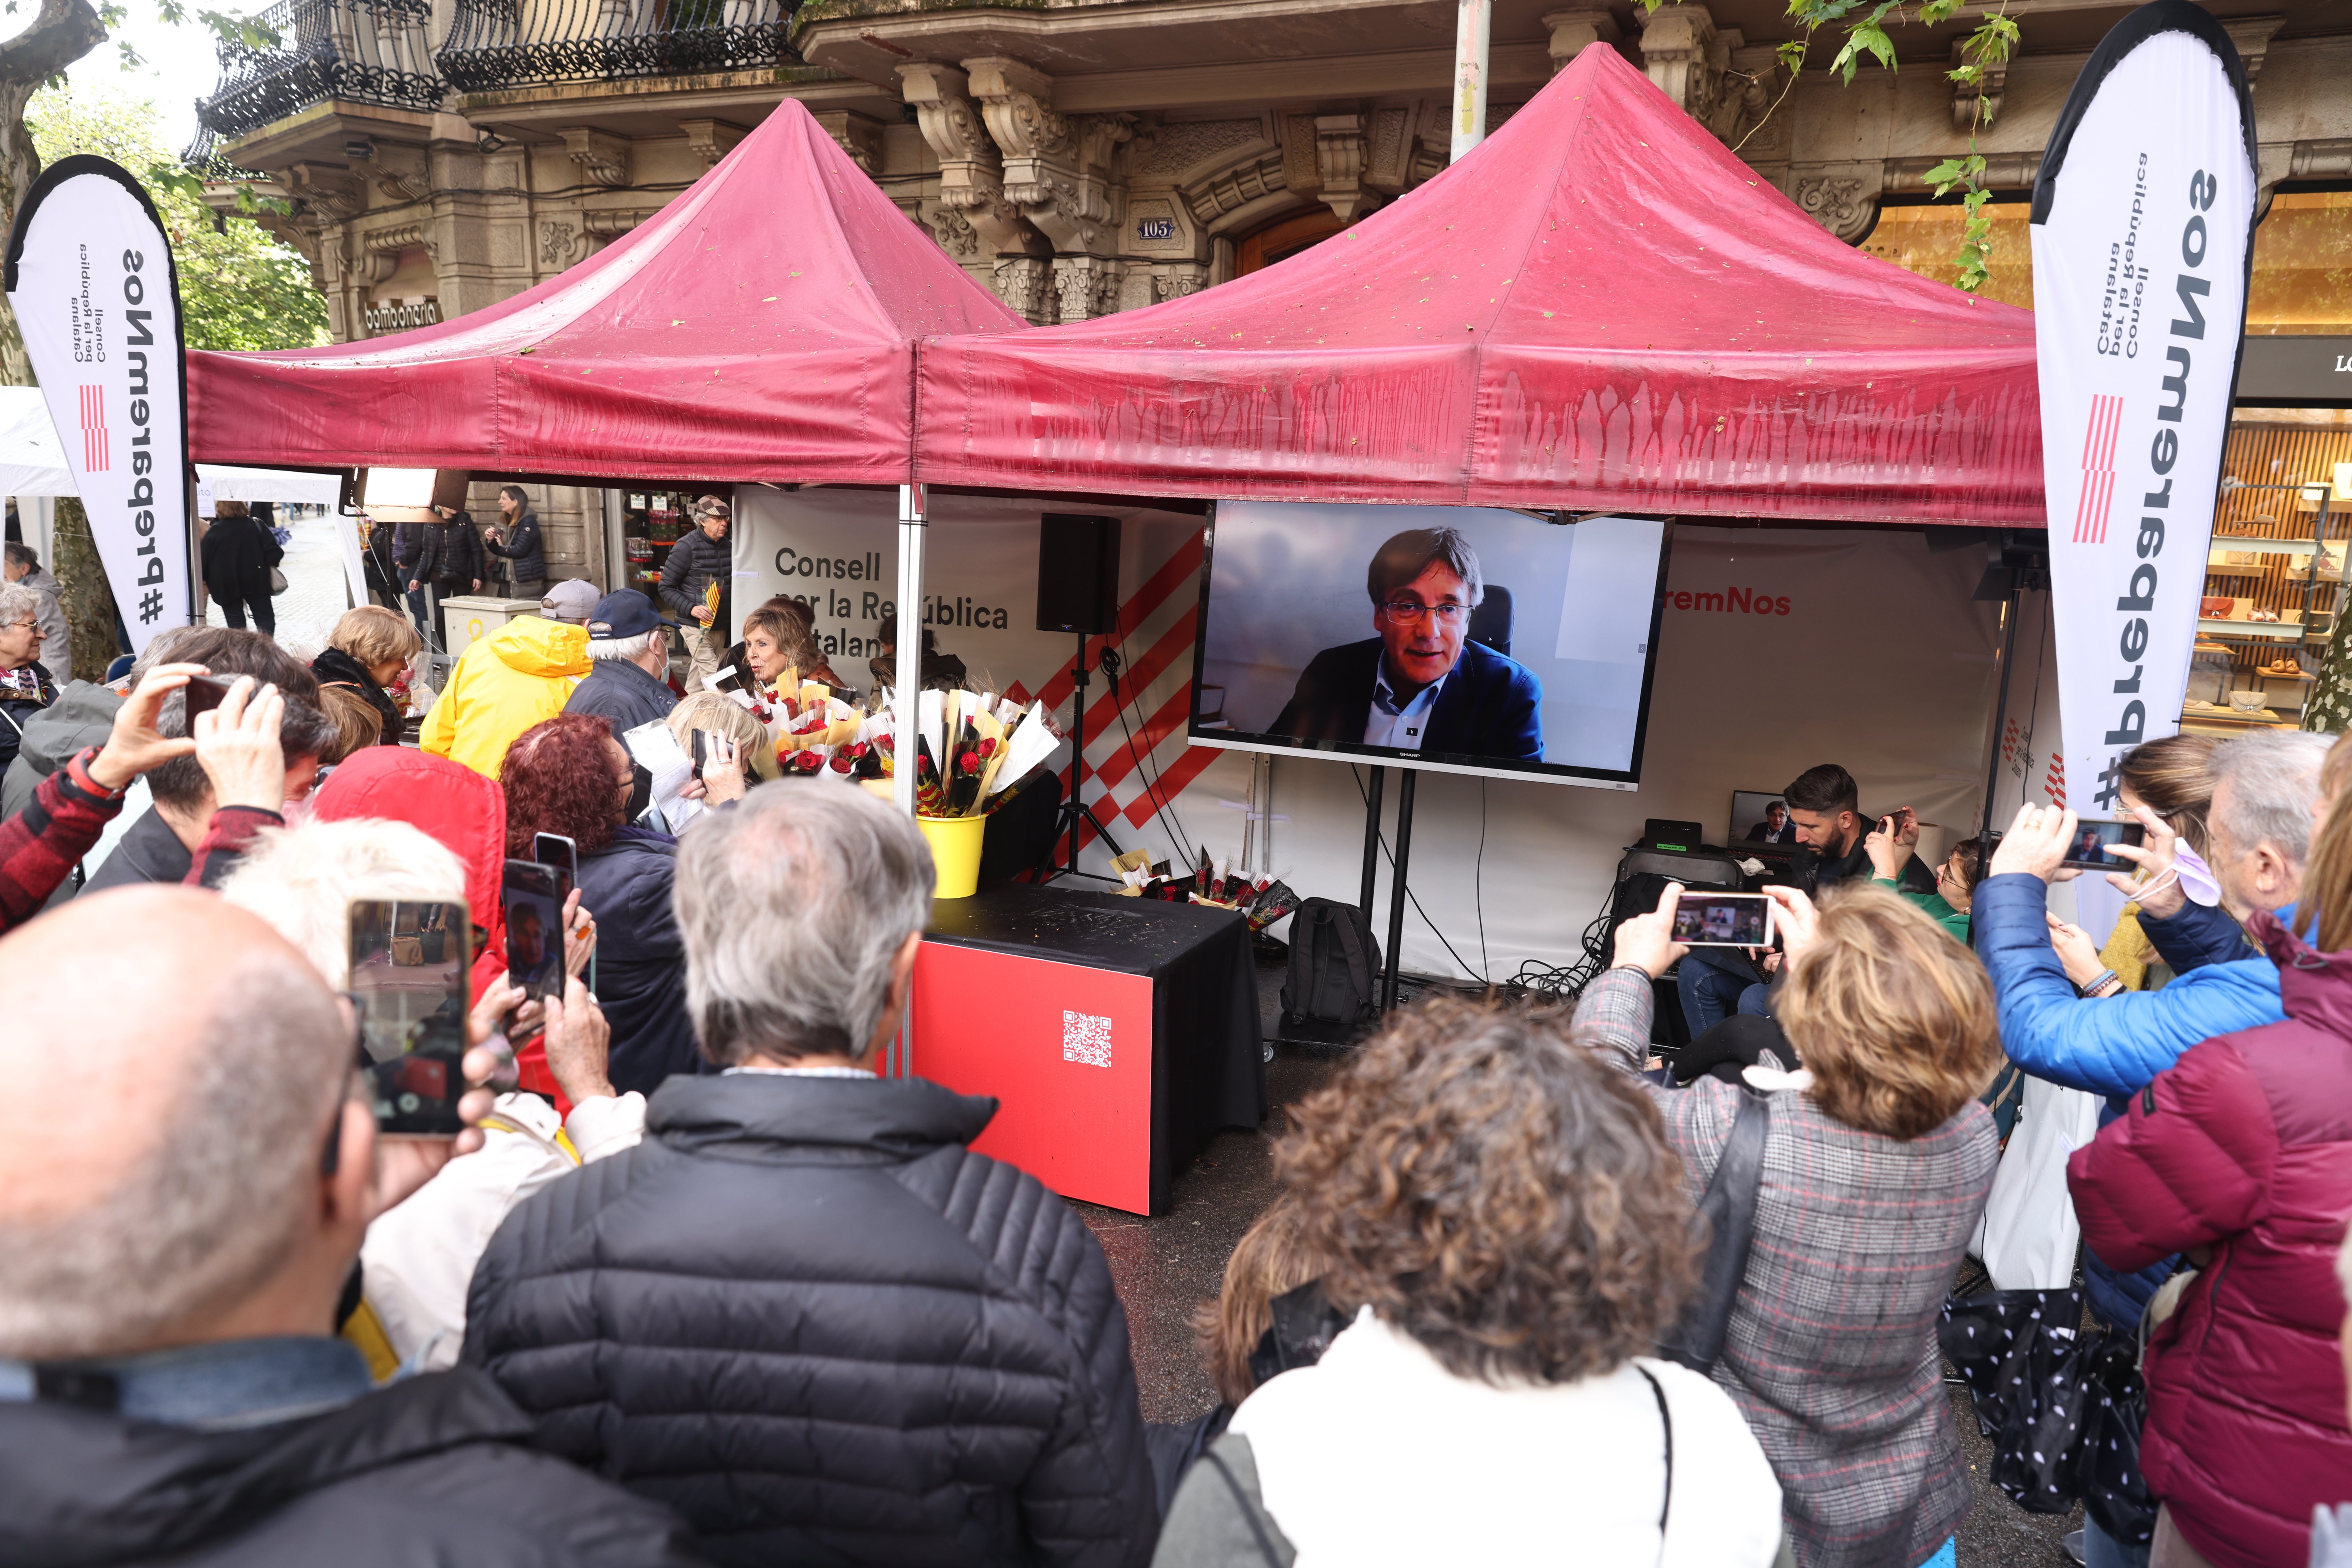 Puigdemont: "El govern espanyol dedica més esforços a espiar que a dialogar"